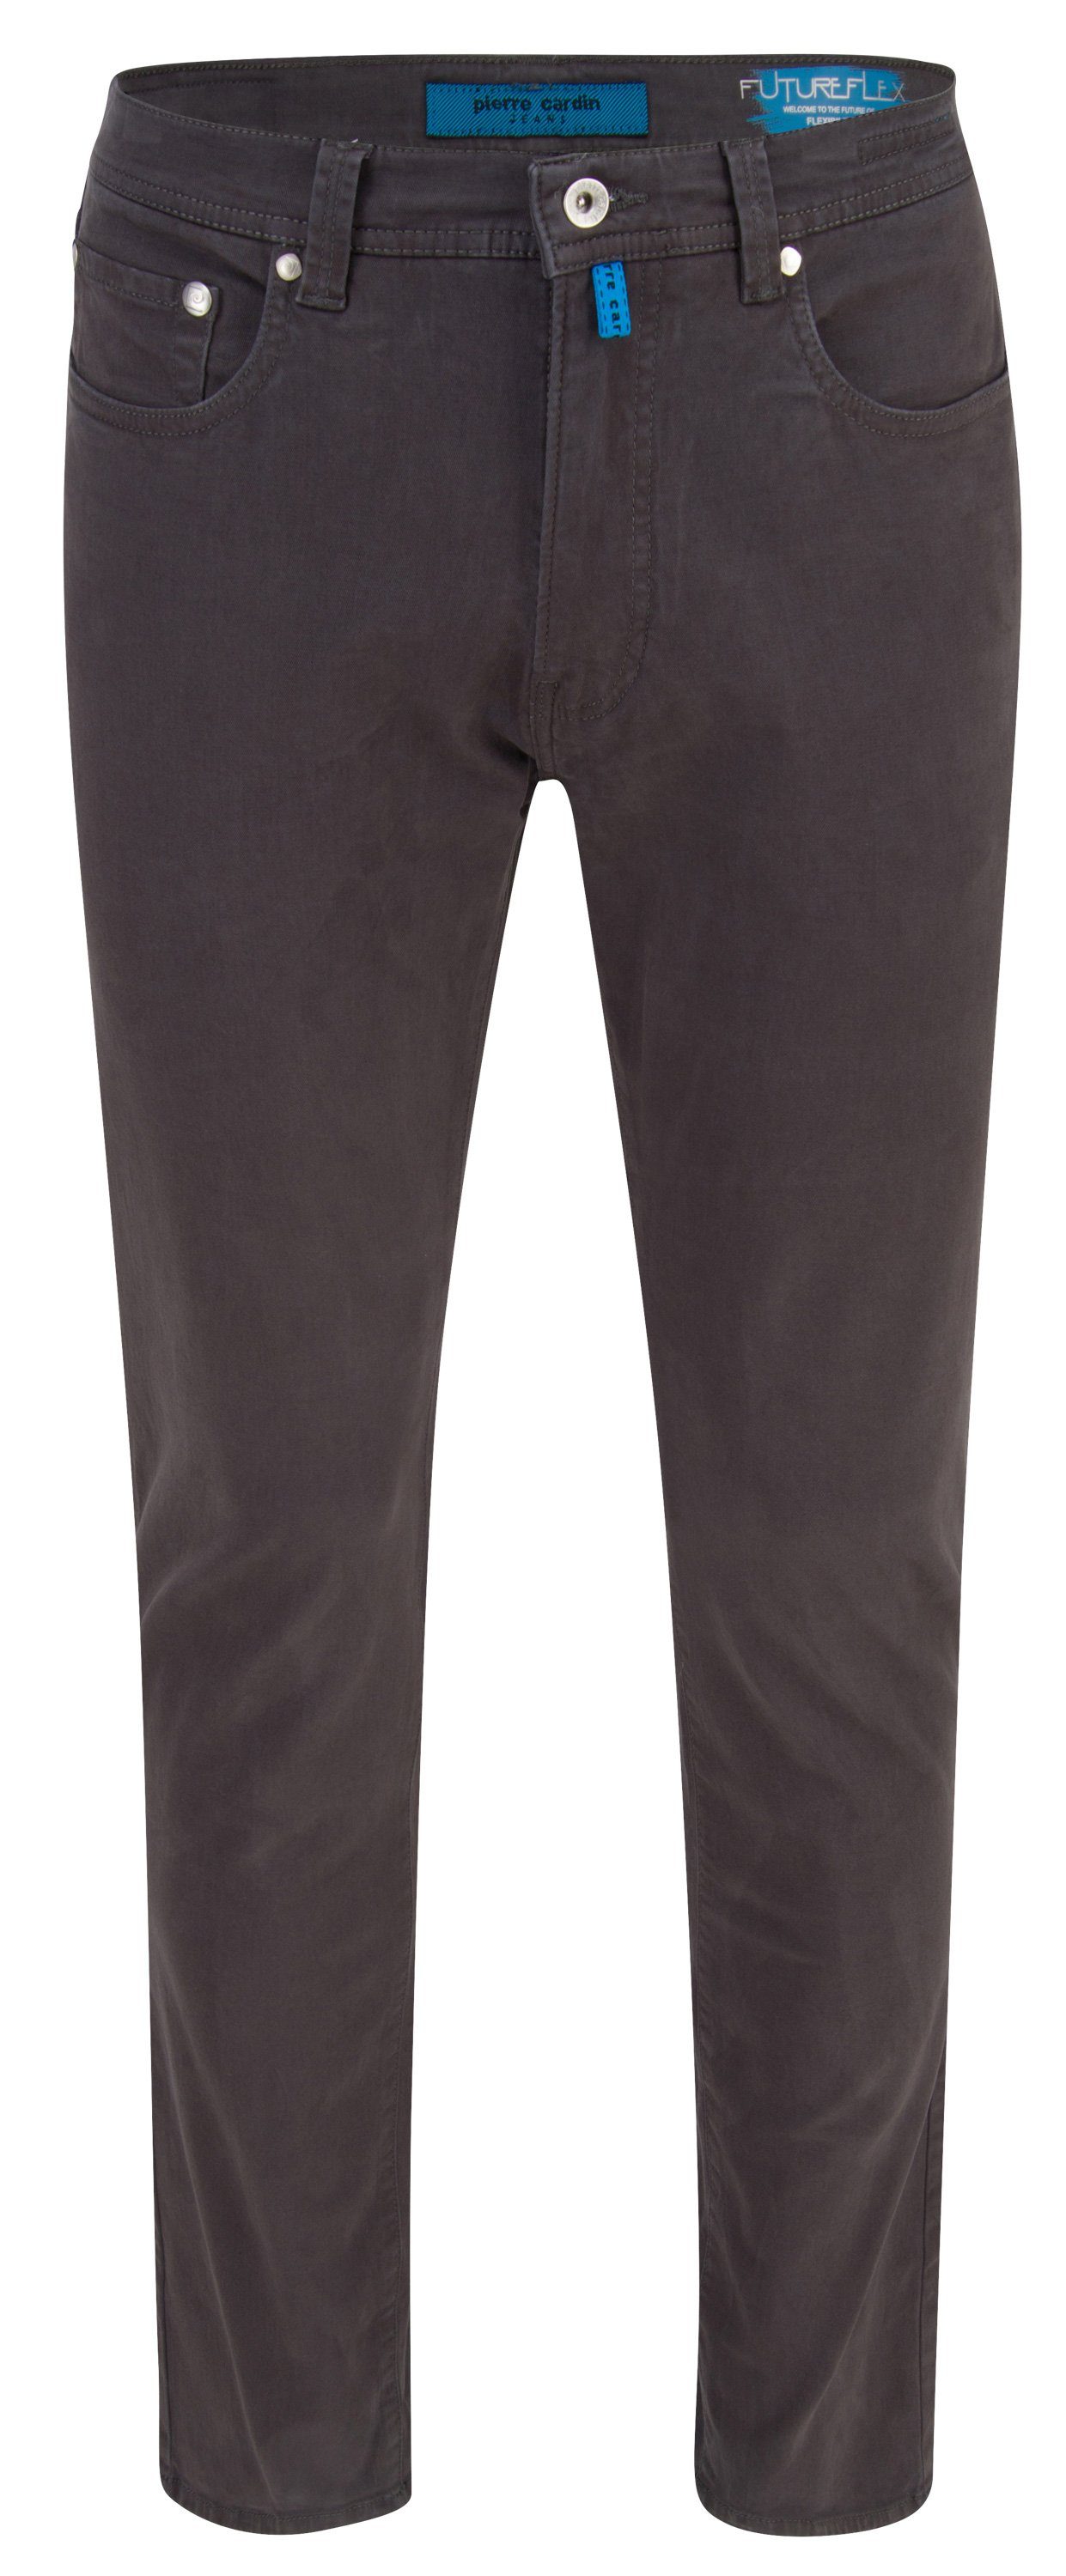 Pierre Cardin 5-Pocket-Jeans PIERRE CARDIN LYON 3451 2233.85 FUTUREFLEX grey